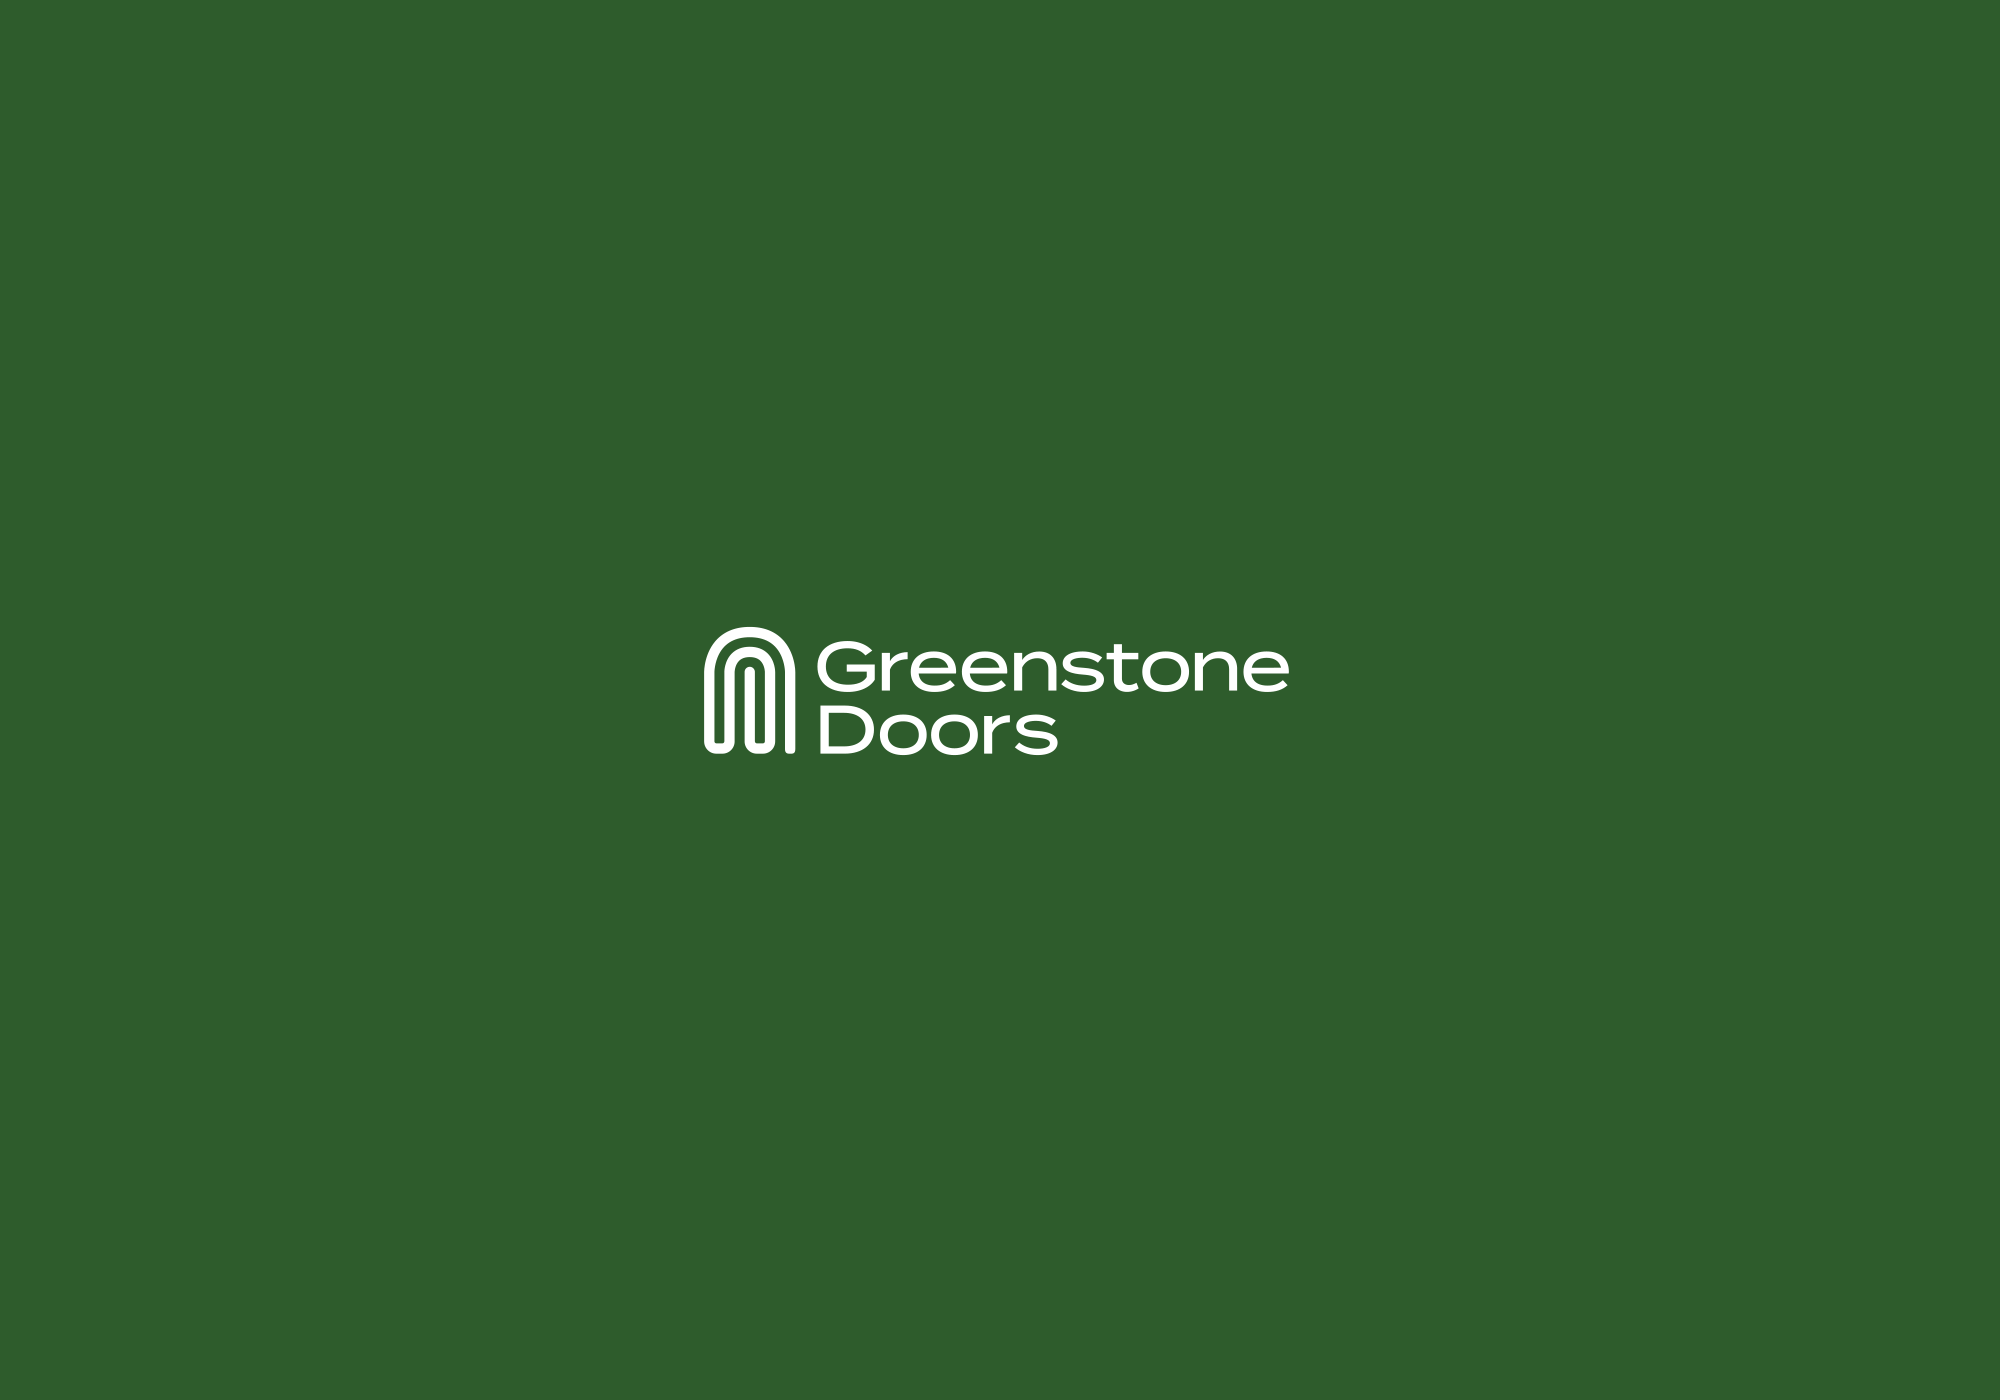 Vine-design-Trust-Greenstone-doors-02